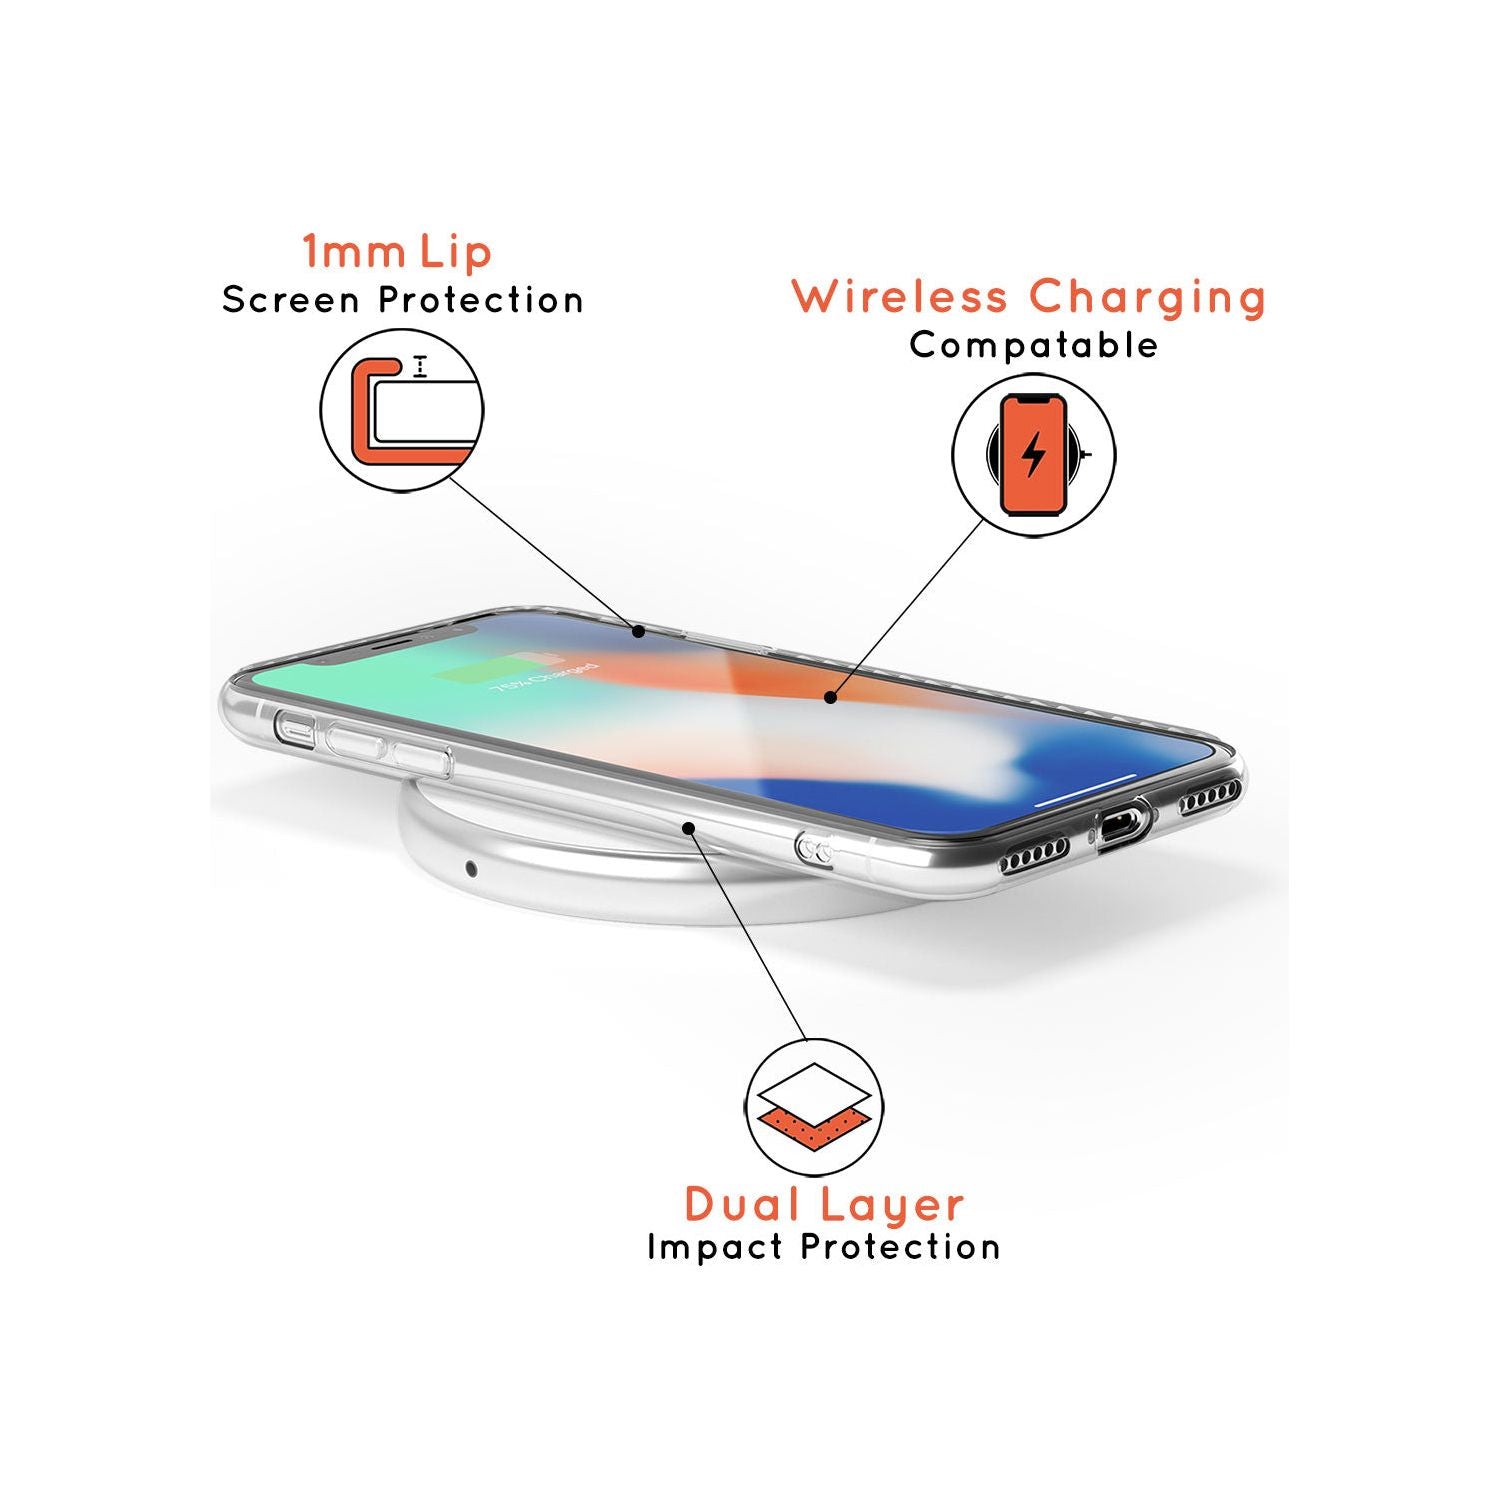 Aquarius Emblem - Transparent Design Slim TPU Phone Case for iPhone SE 8 7 Plus